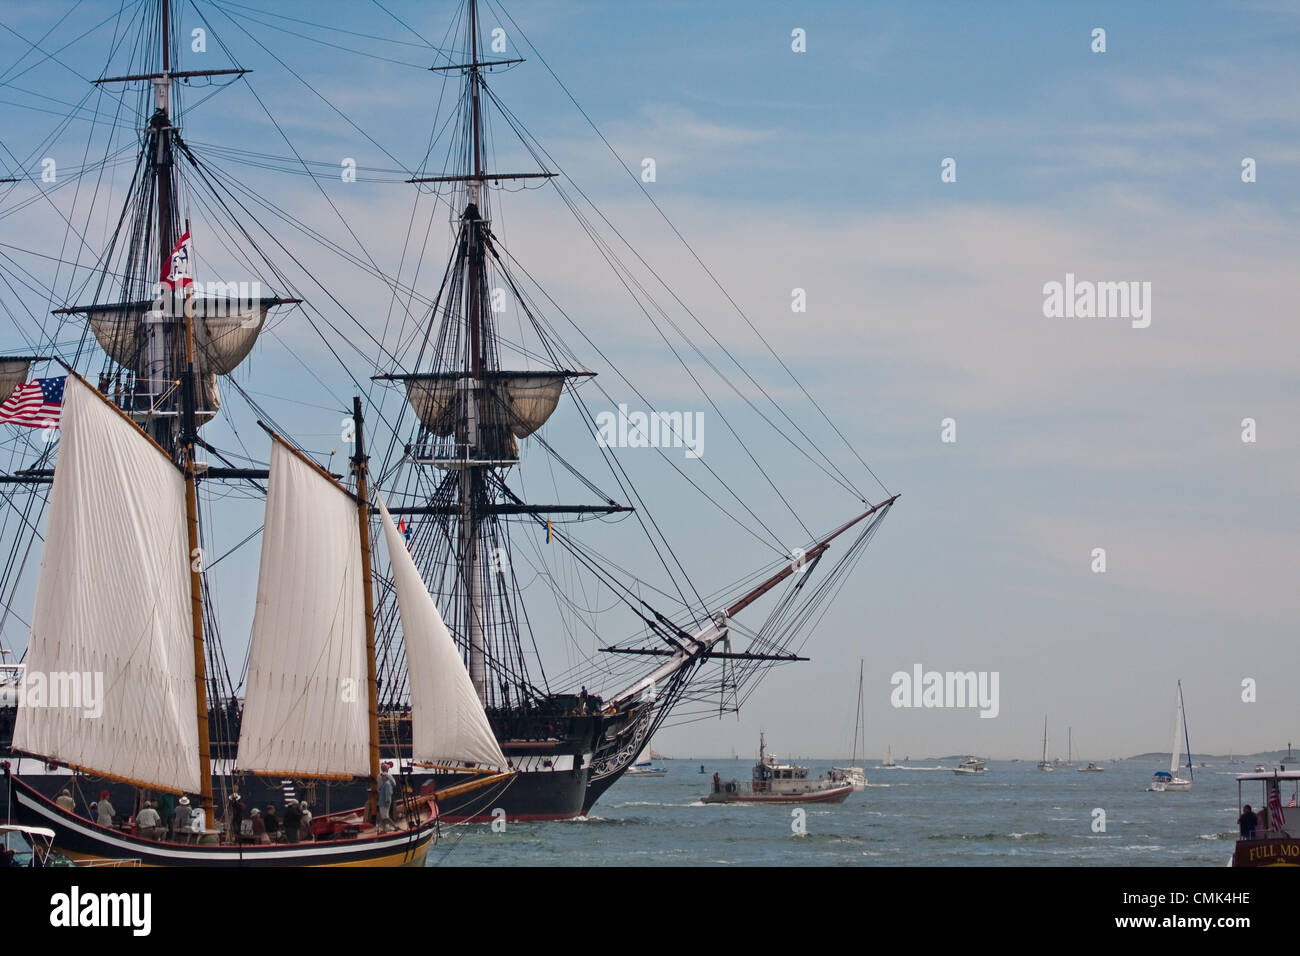 Freude, dass Boote versammeln sich, um die USS Constitution-Kopf für eine Festschrift Segel im Hafen von Boston, Kennzeichnung des Tages sie besiegte die britische Fregatte HMS Guerriere und den Spitznamen "Old Ironsides" während des Krieges von 1812 aufpassen. Stockfoto